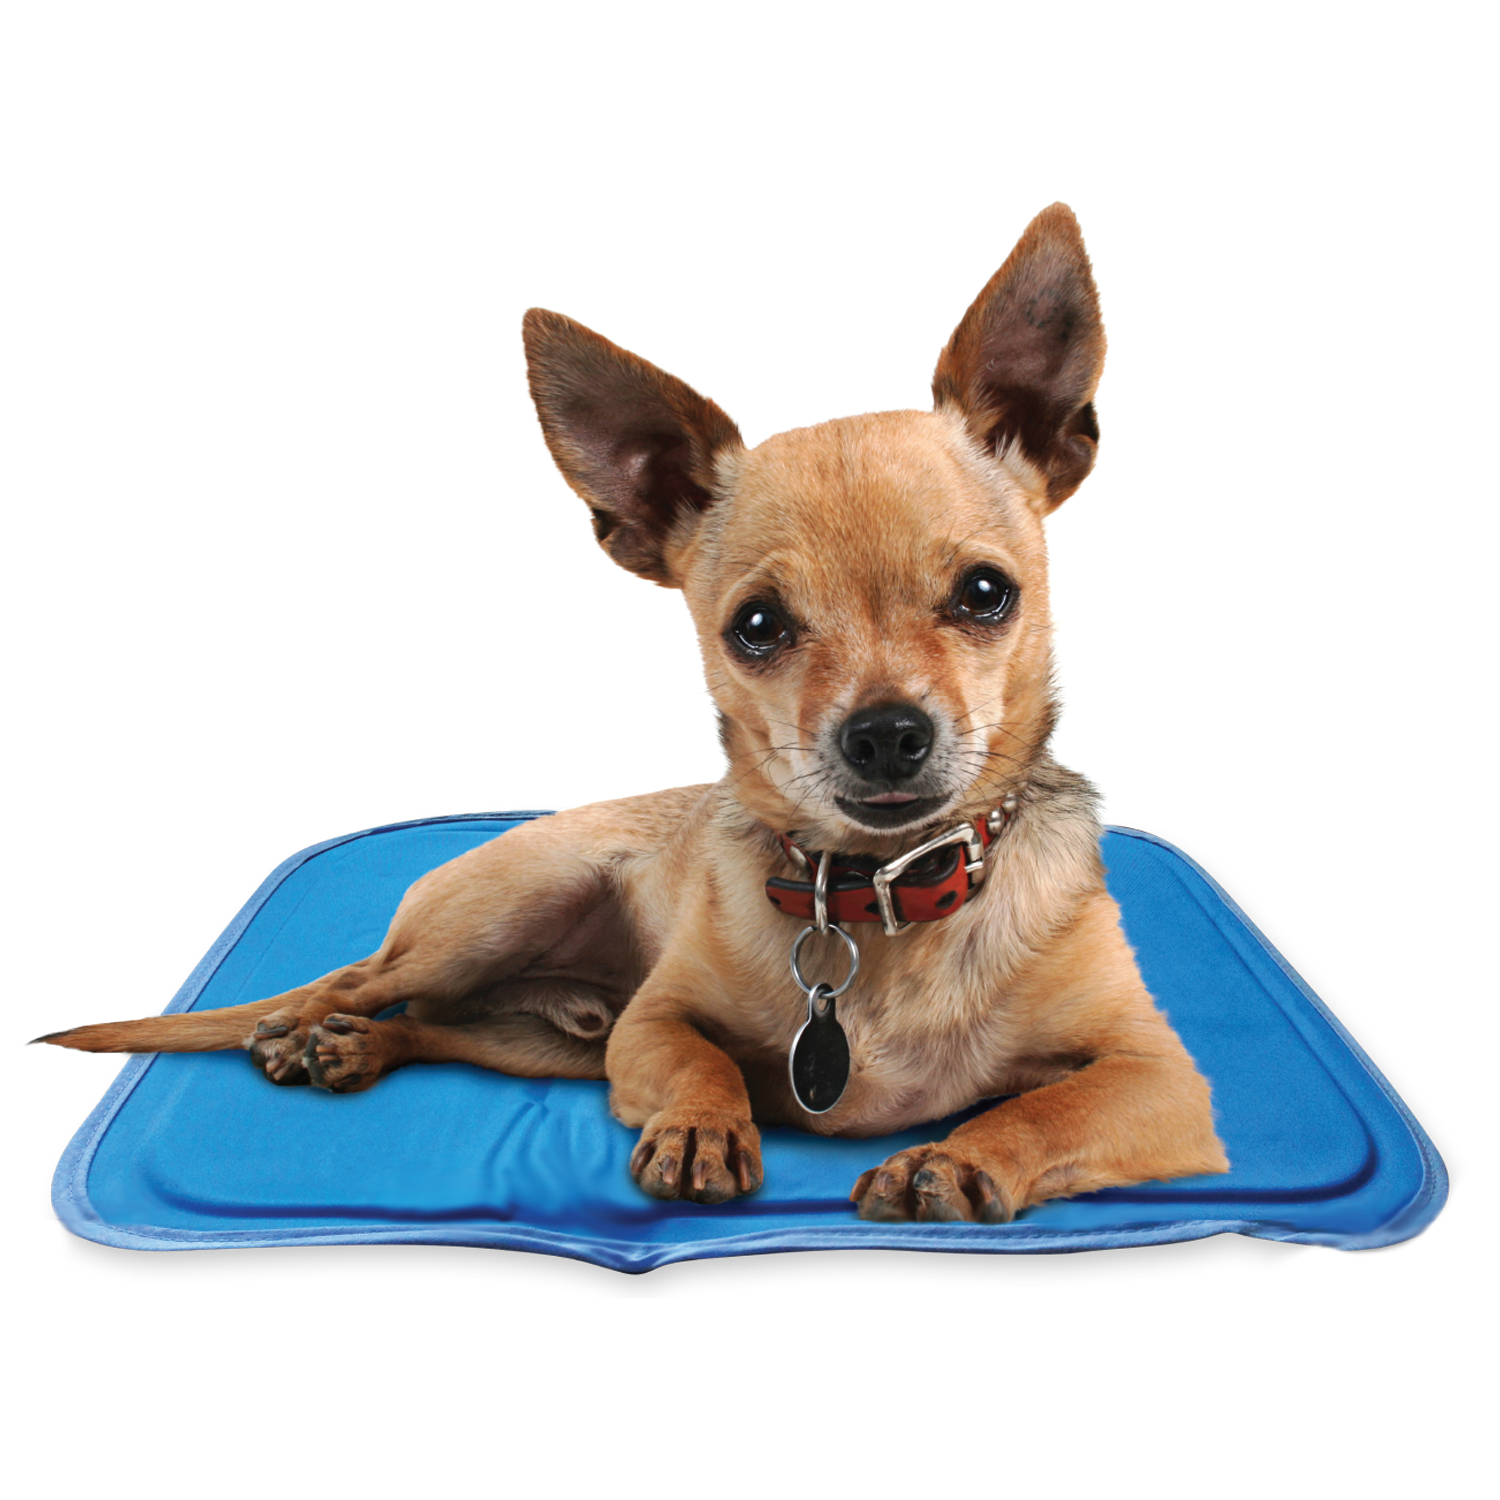 Cool Pet Pads, Pet Cooling Mat and Beds